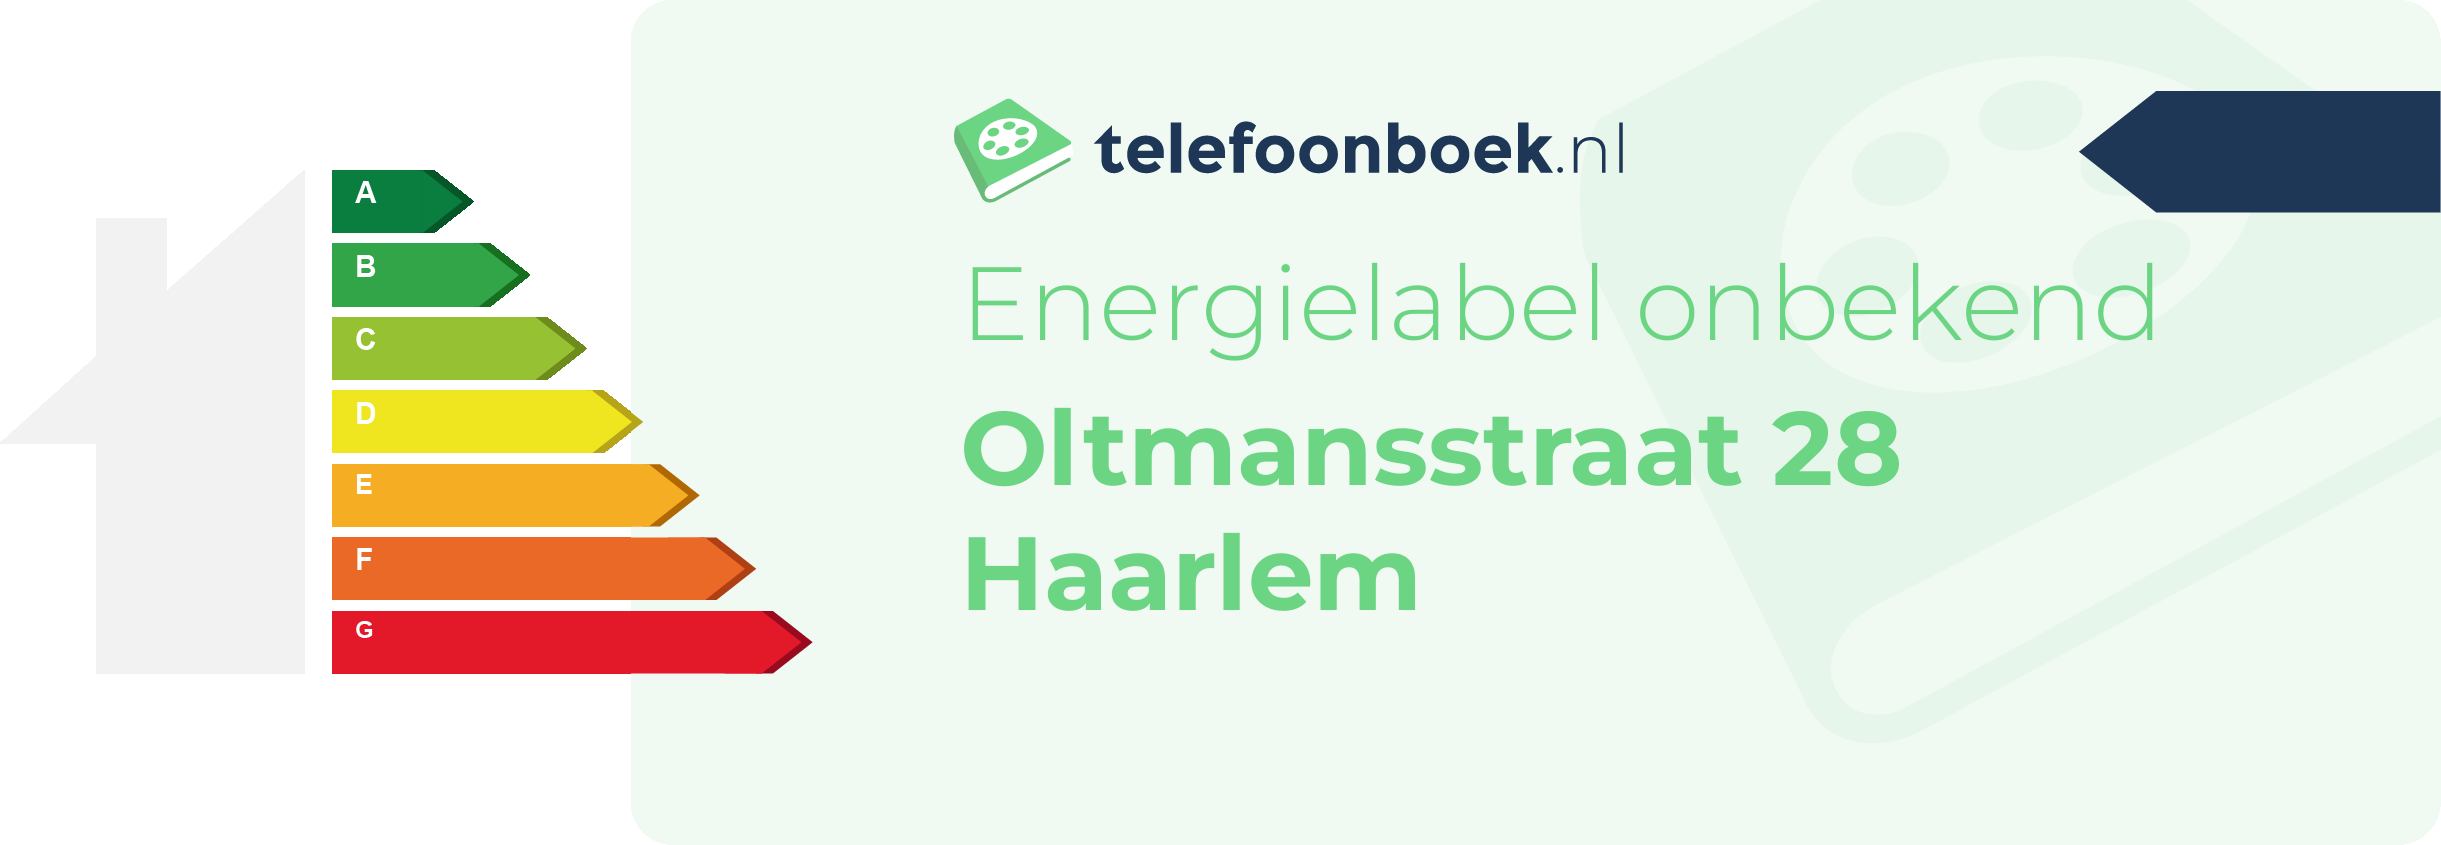 Energielabel Oltmansstraat 28 Haarlem